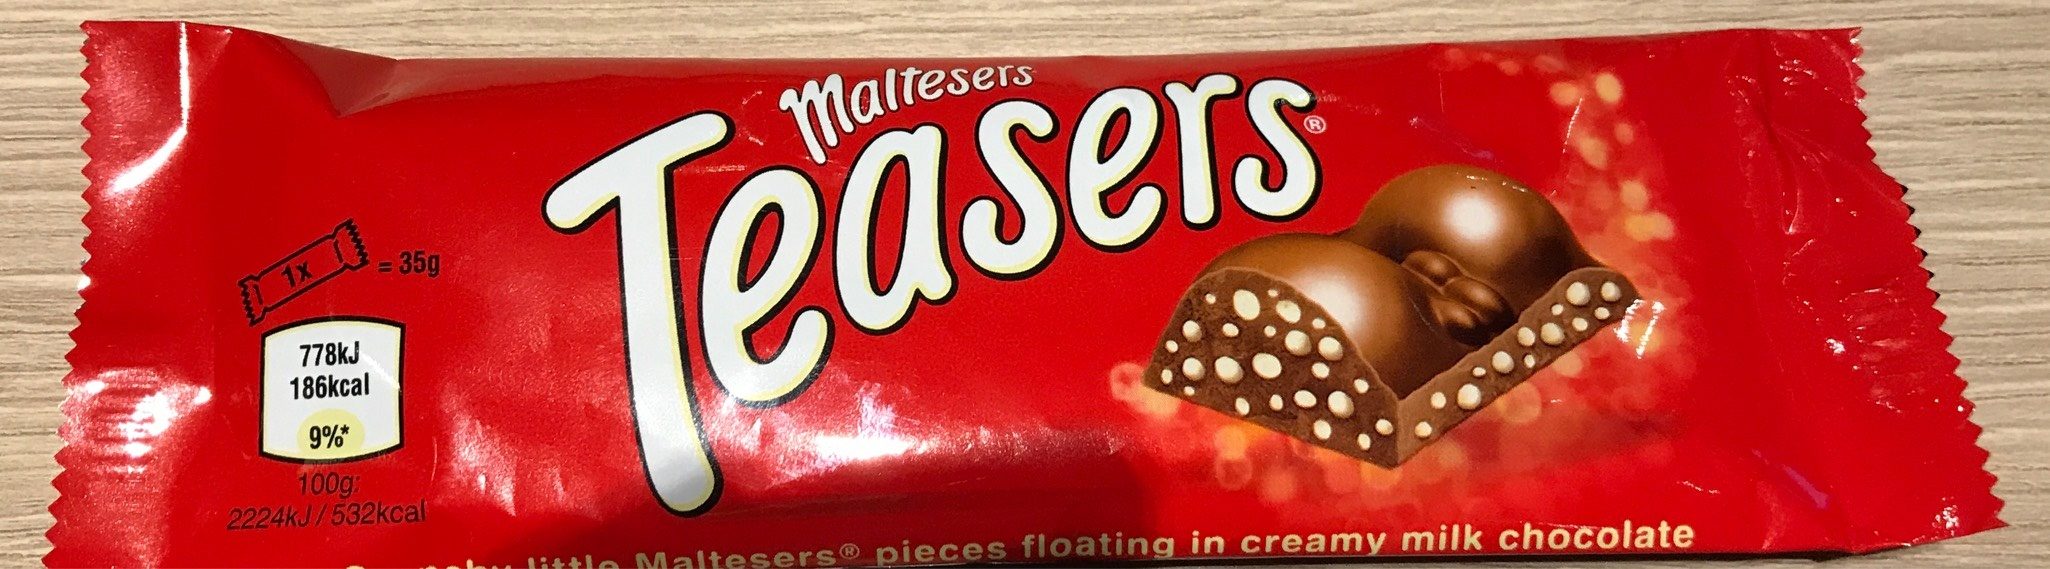 Maltesers Teasers - Produkt - en